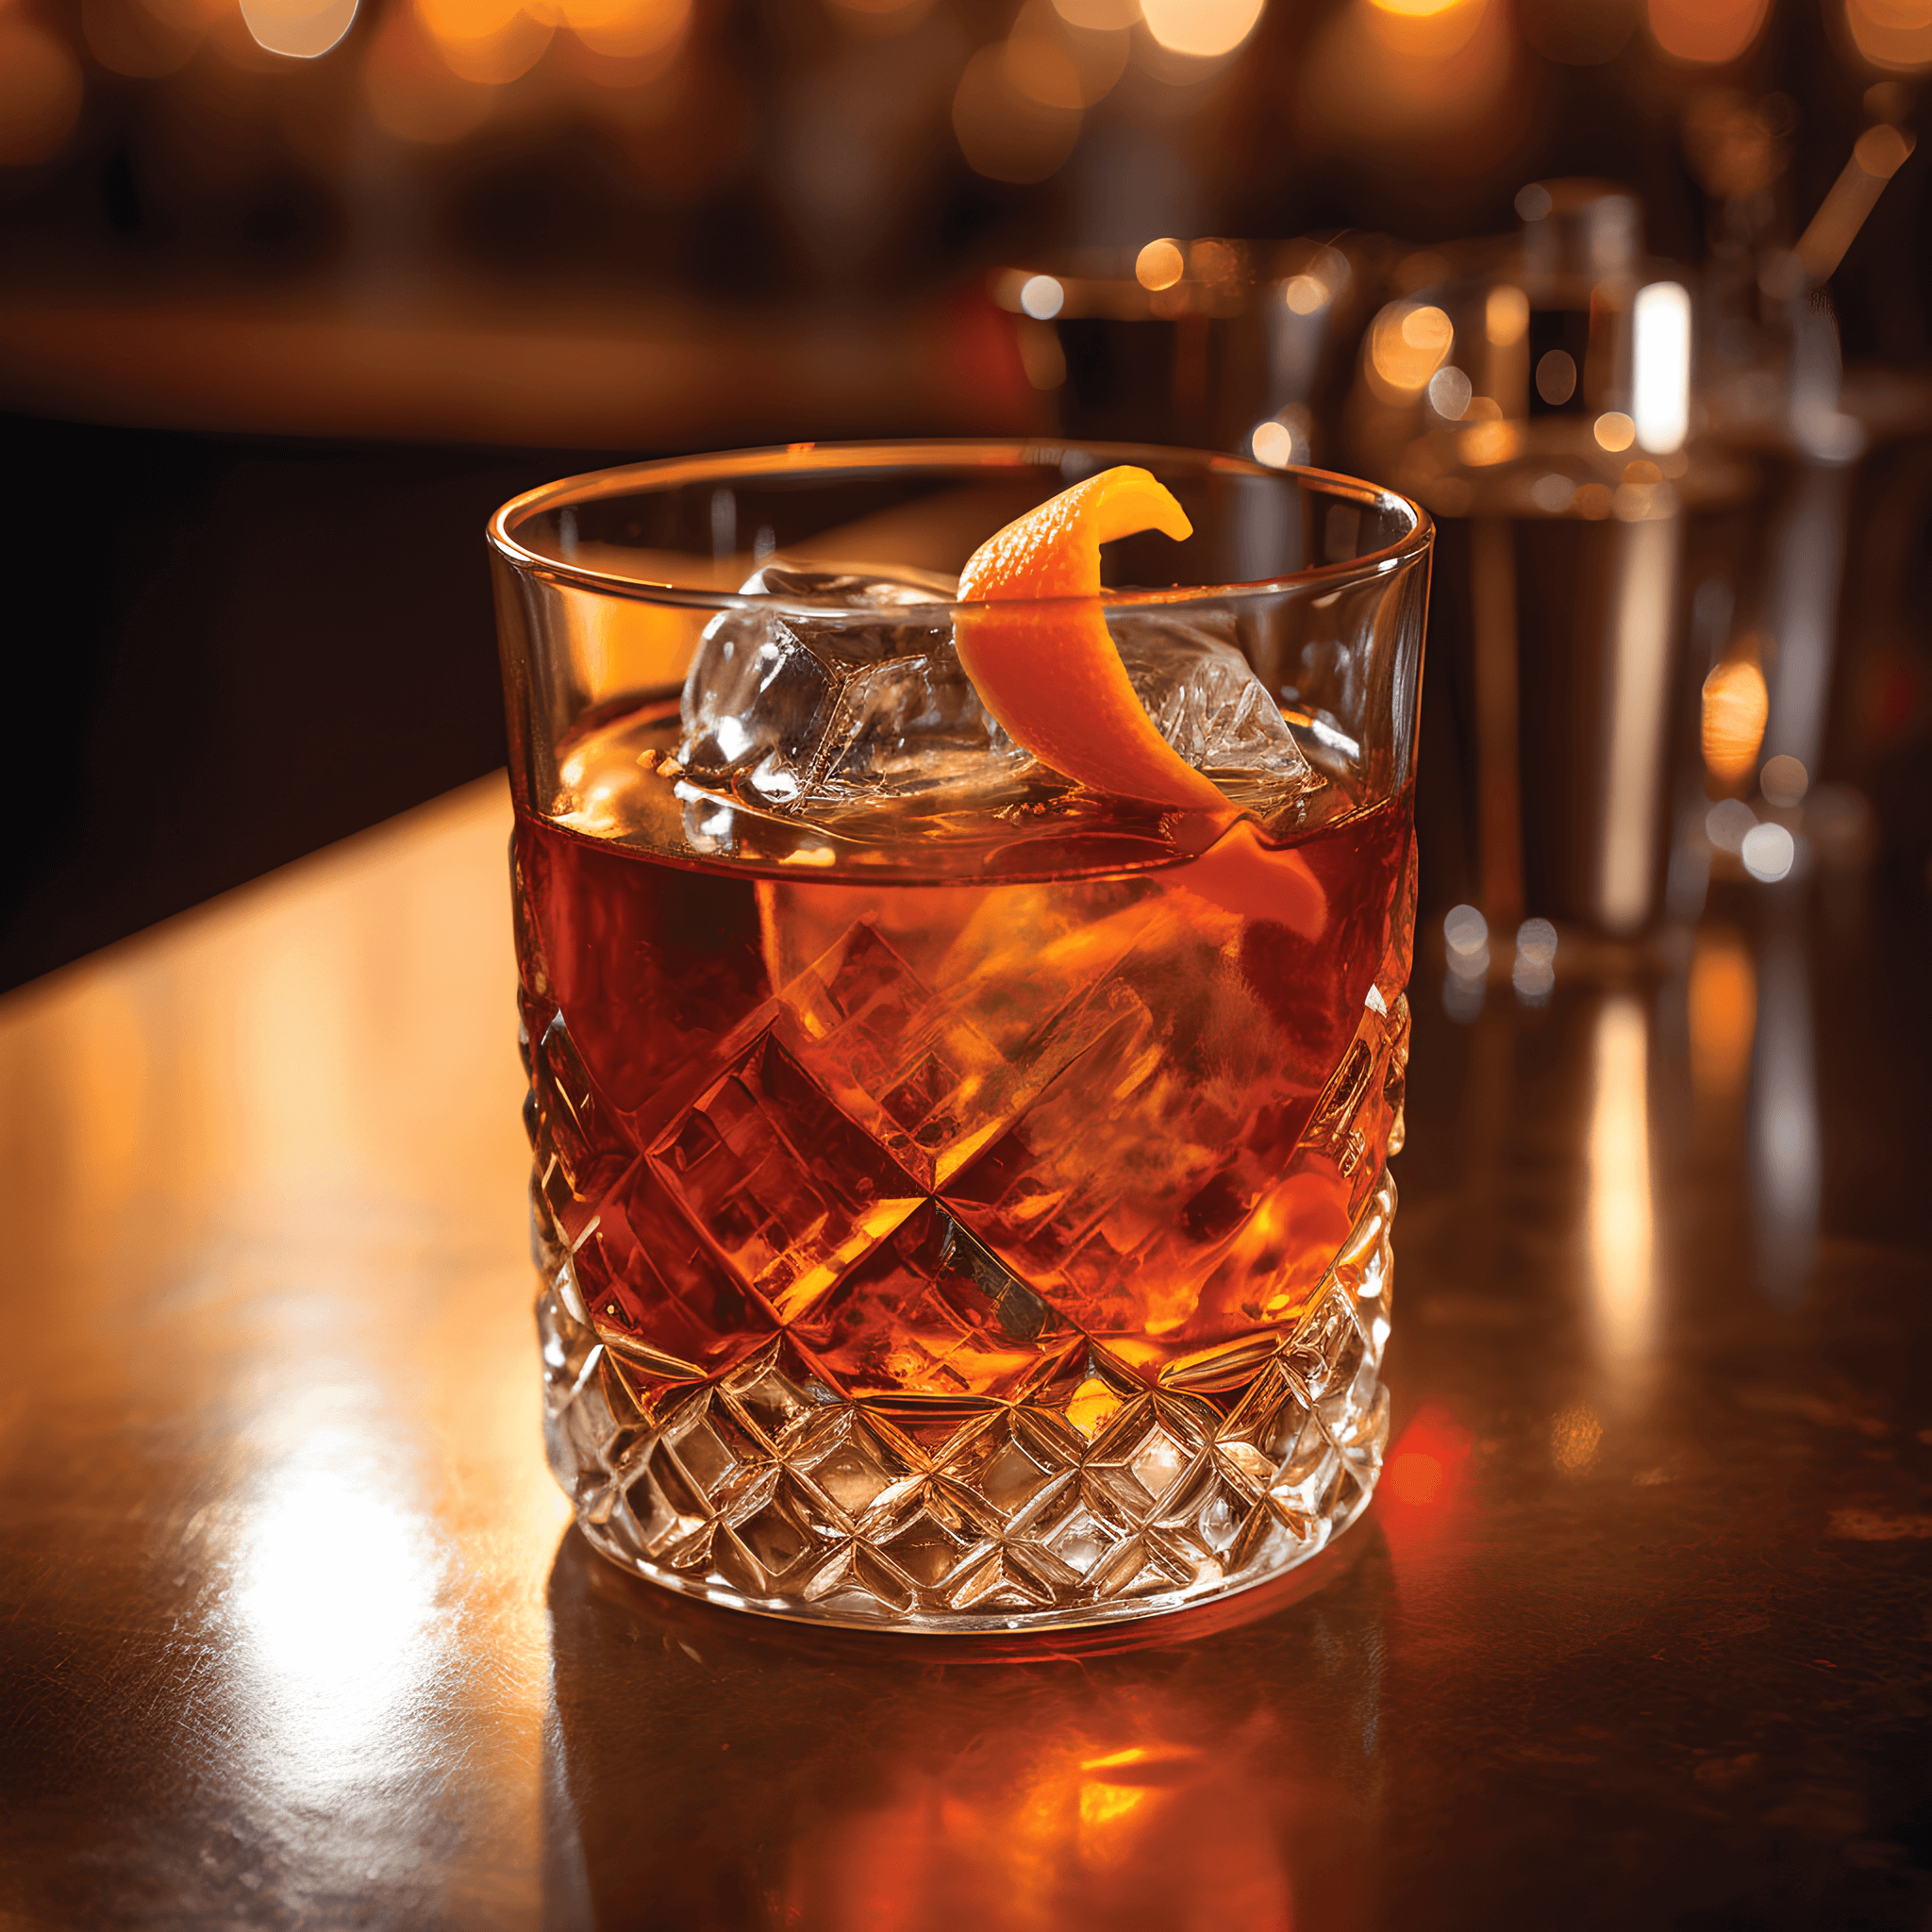 Old Fashioned Cóctel Receta - El Old Fashioned tiene un sabor rico y complejo que es dulce y amargo. El whisky proporciona una base fuerte y cálida, mientras que el azúcar y los amargos agregan un toque de dulzura y un toque de especias. La guarnición de naranja y cereza agrega una nota sutilmente afrutada.